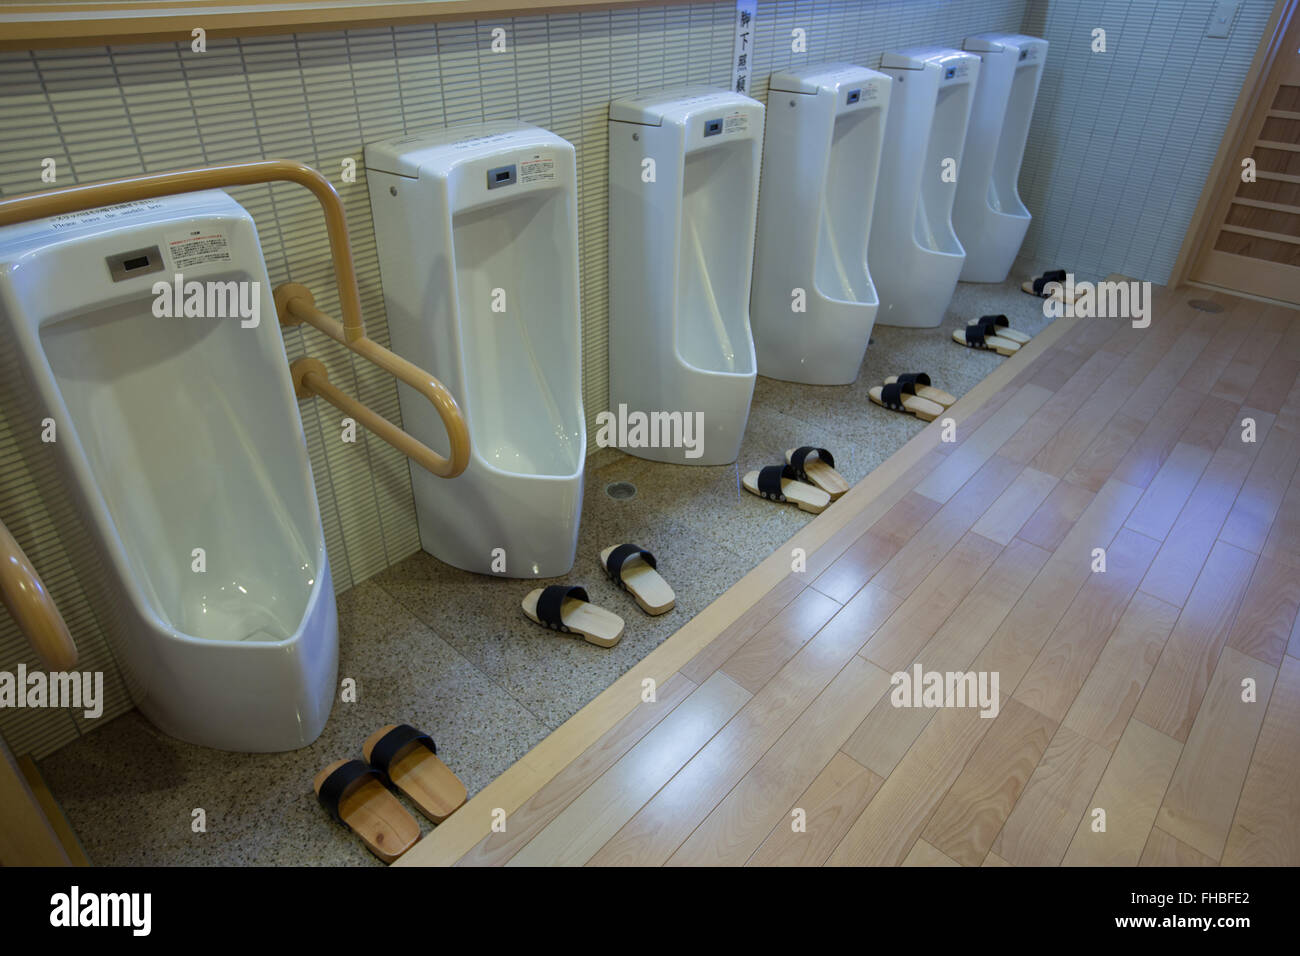 Los urinarios en un santuario en Japón con sandalias Foto de stock